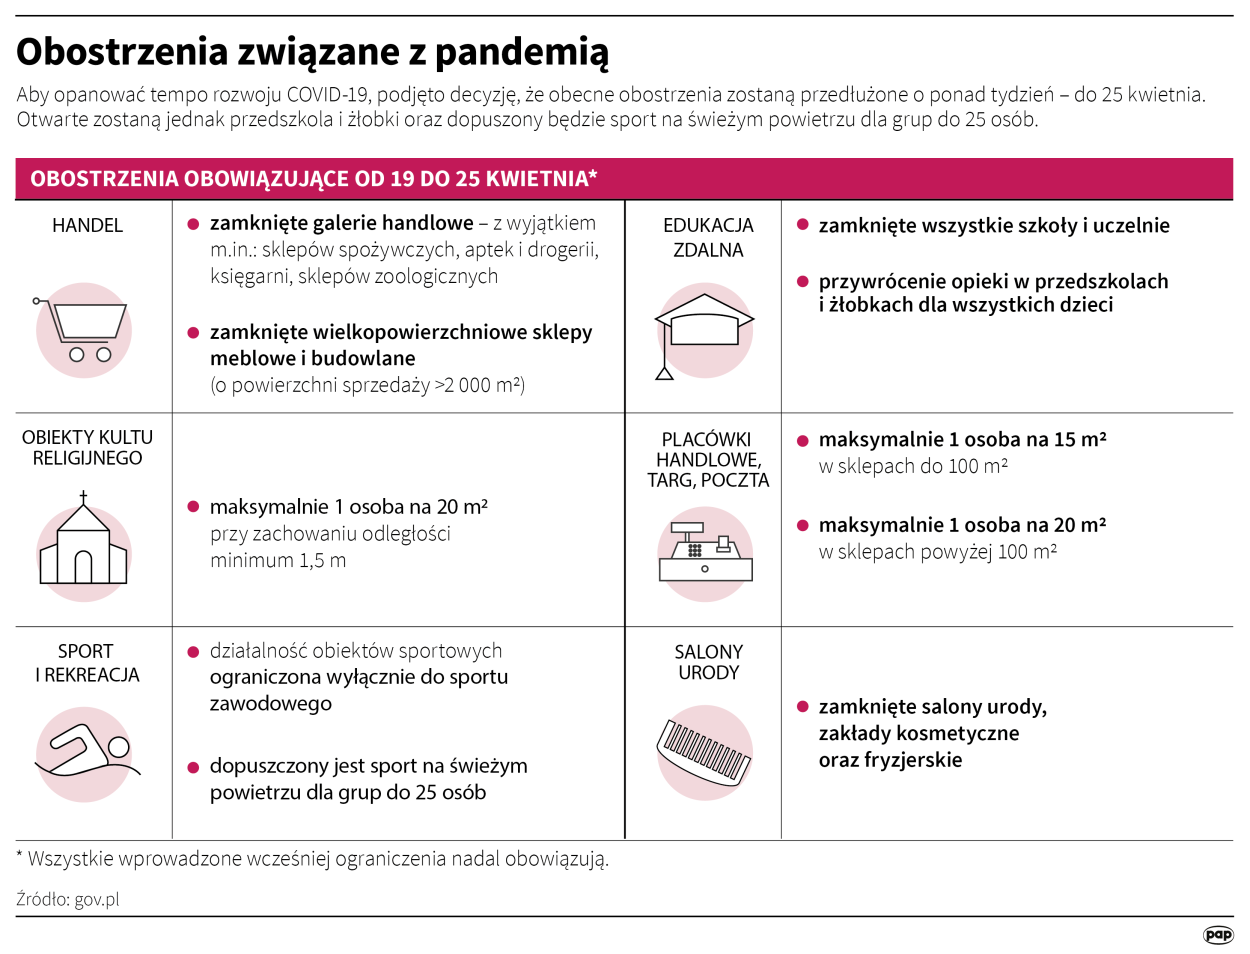 Obostrzenia związane z pandemią Autorzy: Maria Samczuk , Maciej Zieliński